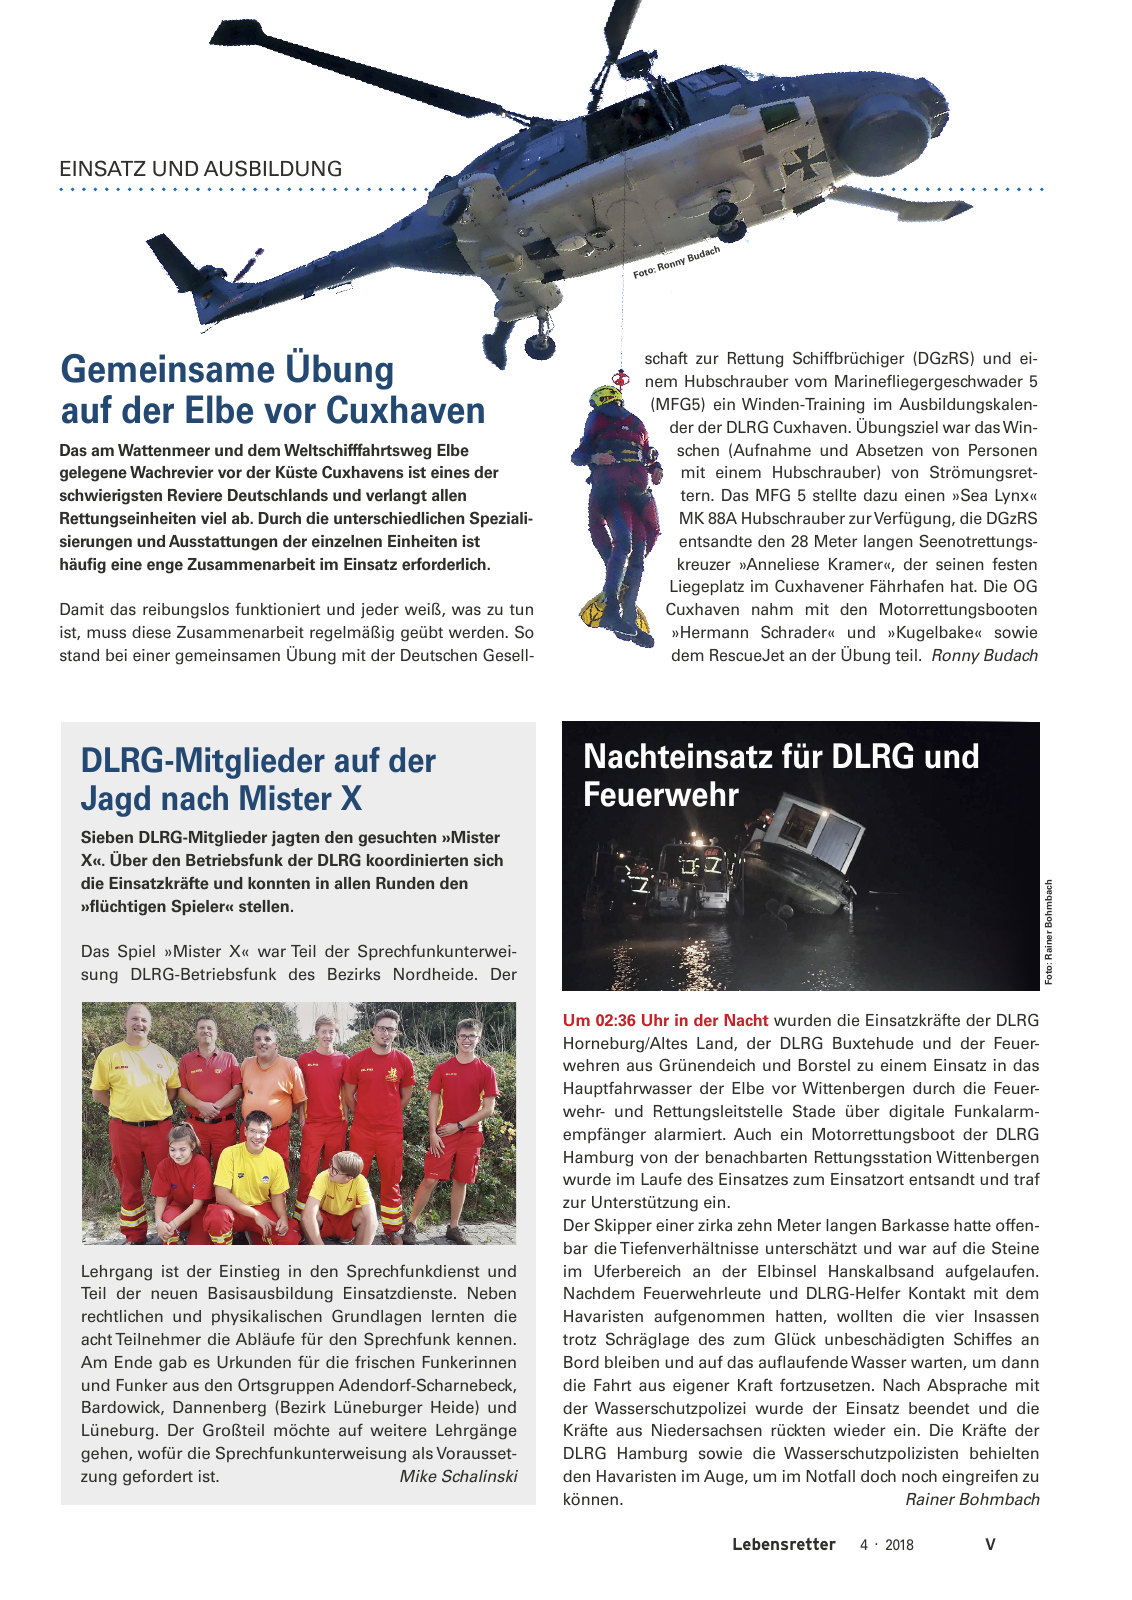 Vorschau Lebensretter 4/2018 - Regionalausgabe Niedersachsen Seite 7